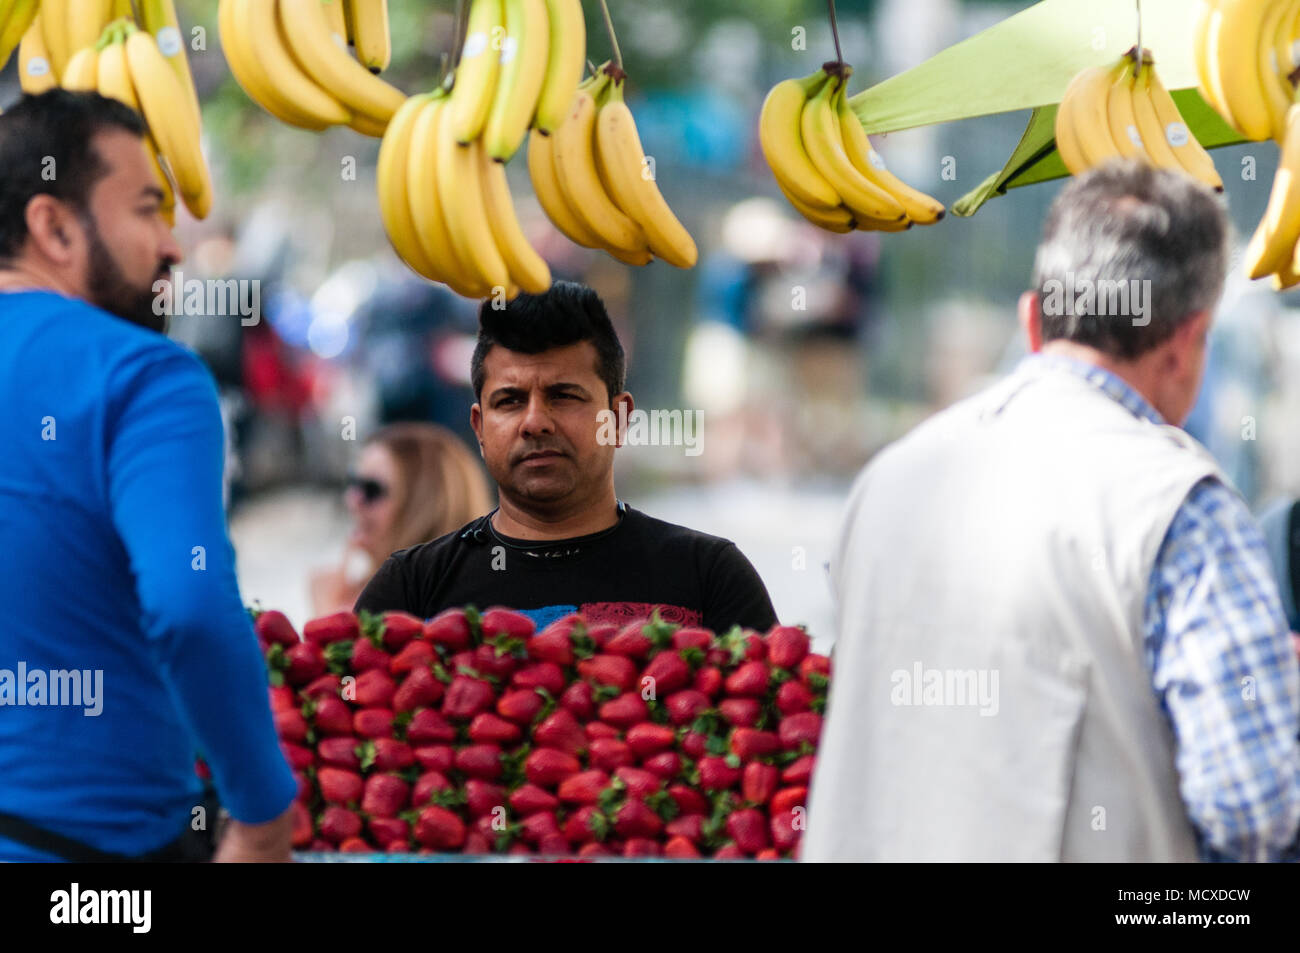 Athen, Griechenland - 29. April 2018: Ein Händler verkauft frisches Obst auf seinem Stand in der Mitte von Athen, Griechenland. Stockfoto